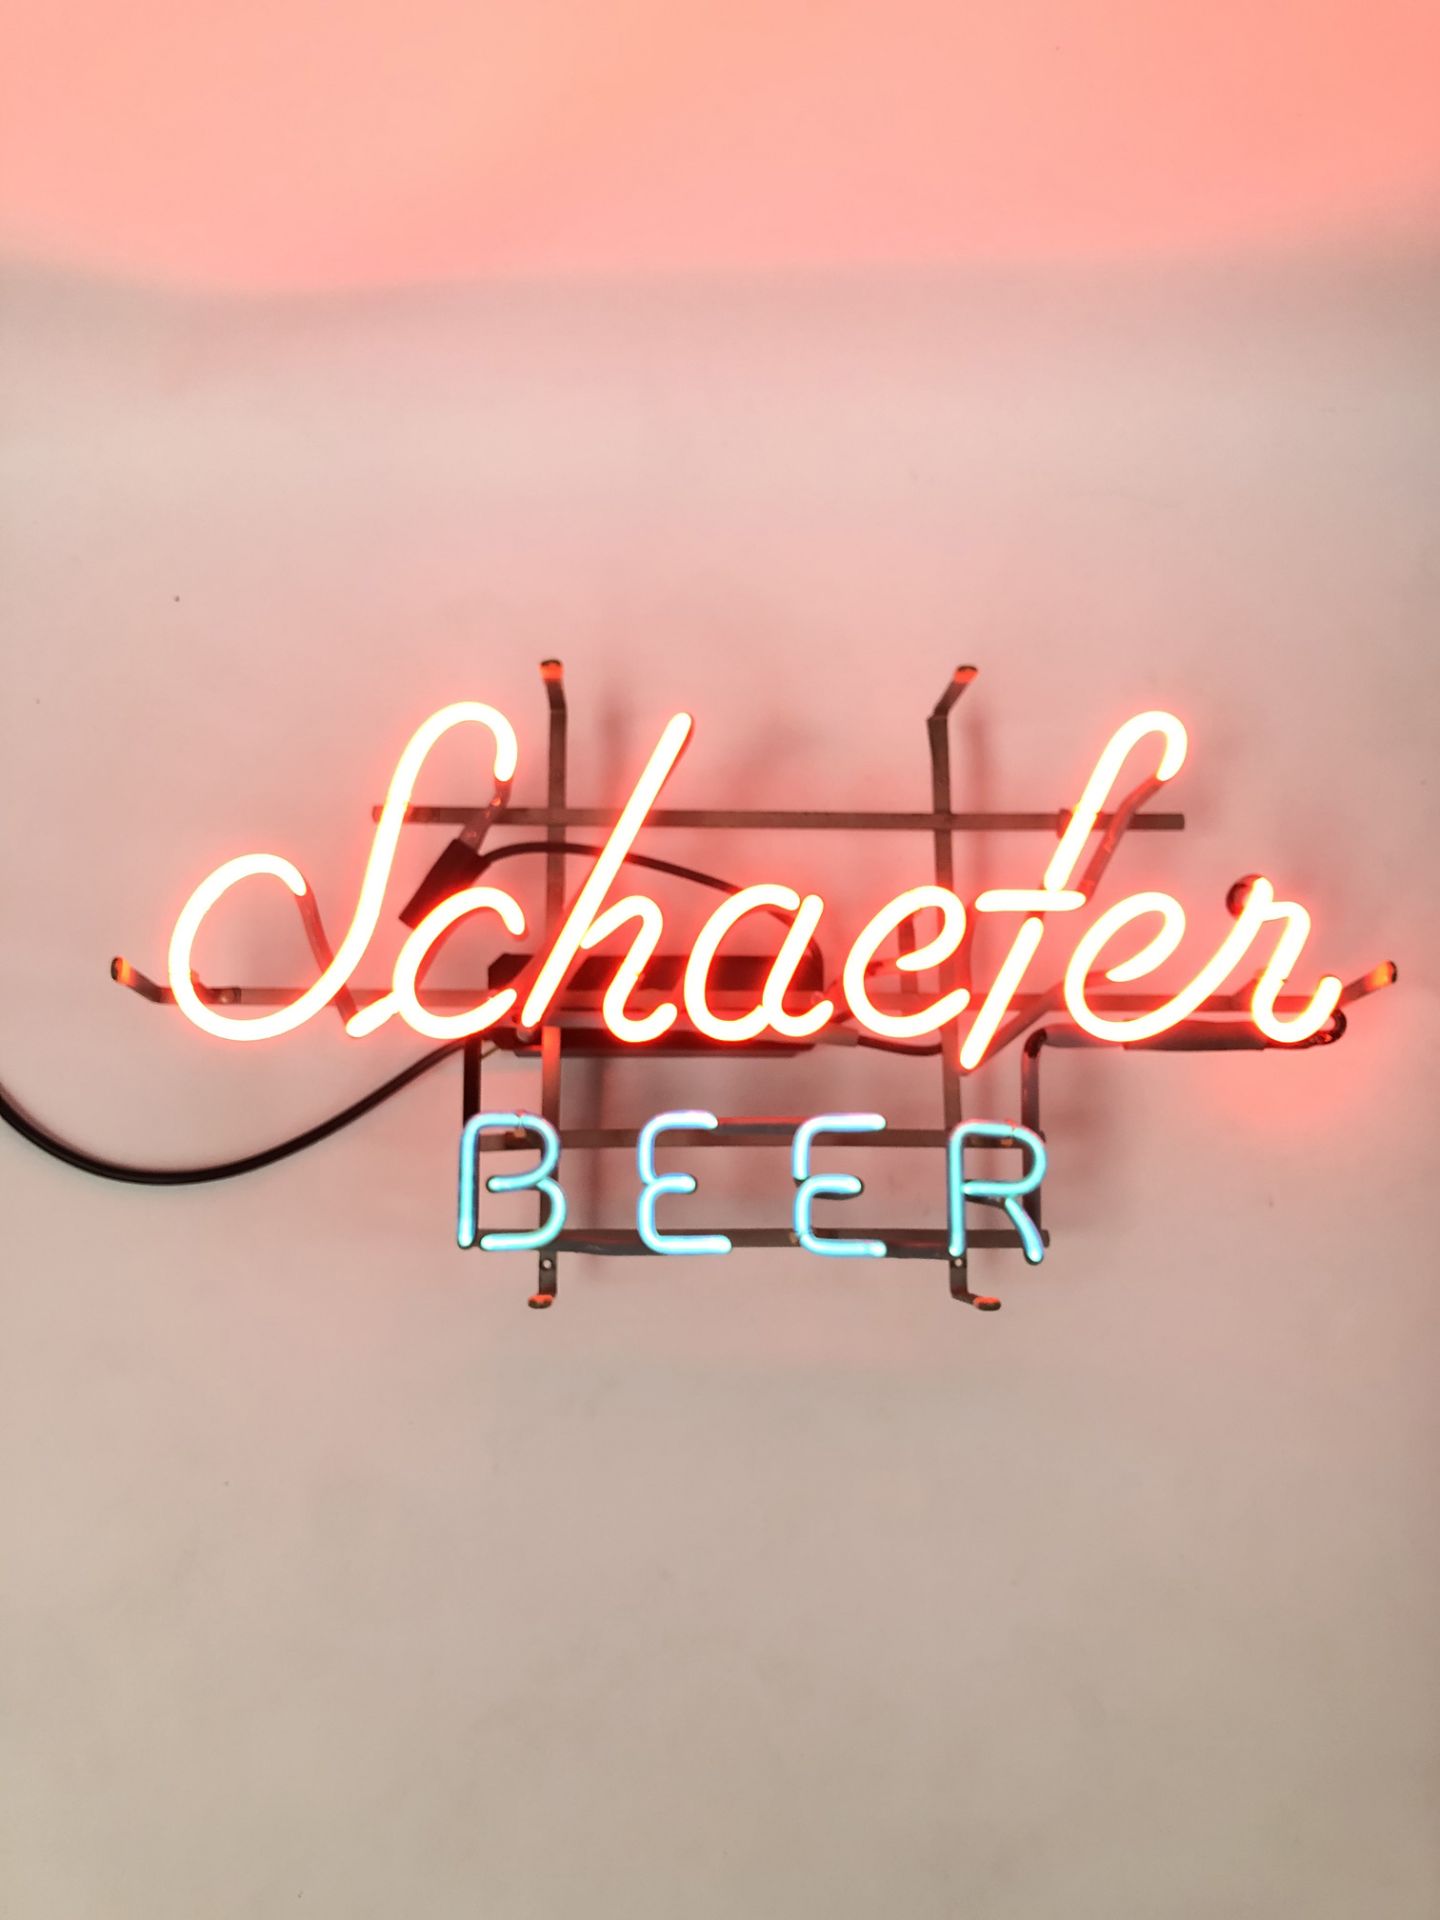 Original Schaefer Beer Neon sign